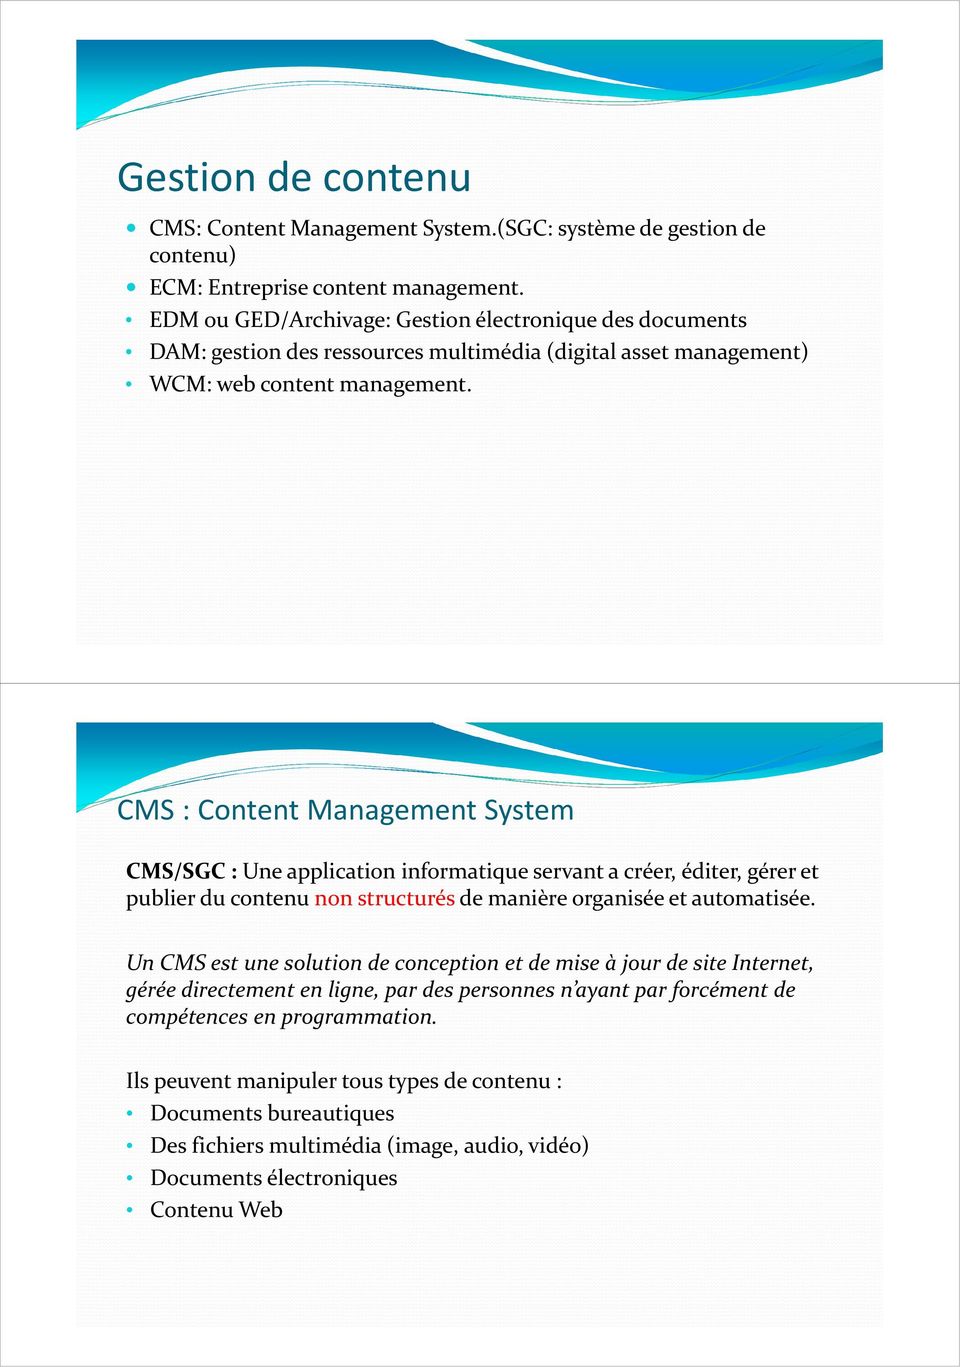 CMS: Content Management System CMS/SGC : Une application informatique servant a créer, éditer, gérer et publier du contenu non structurés de manière organisée et automatisée.